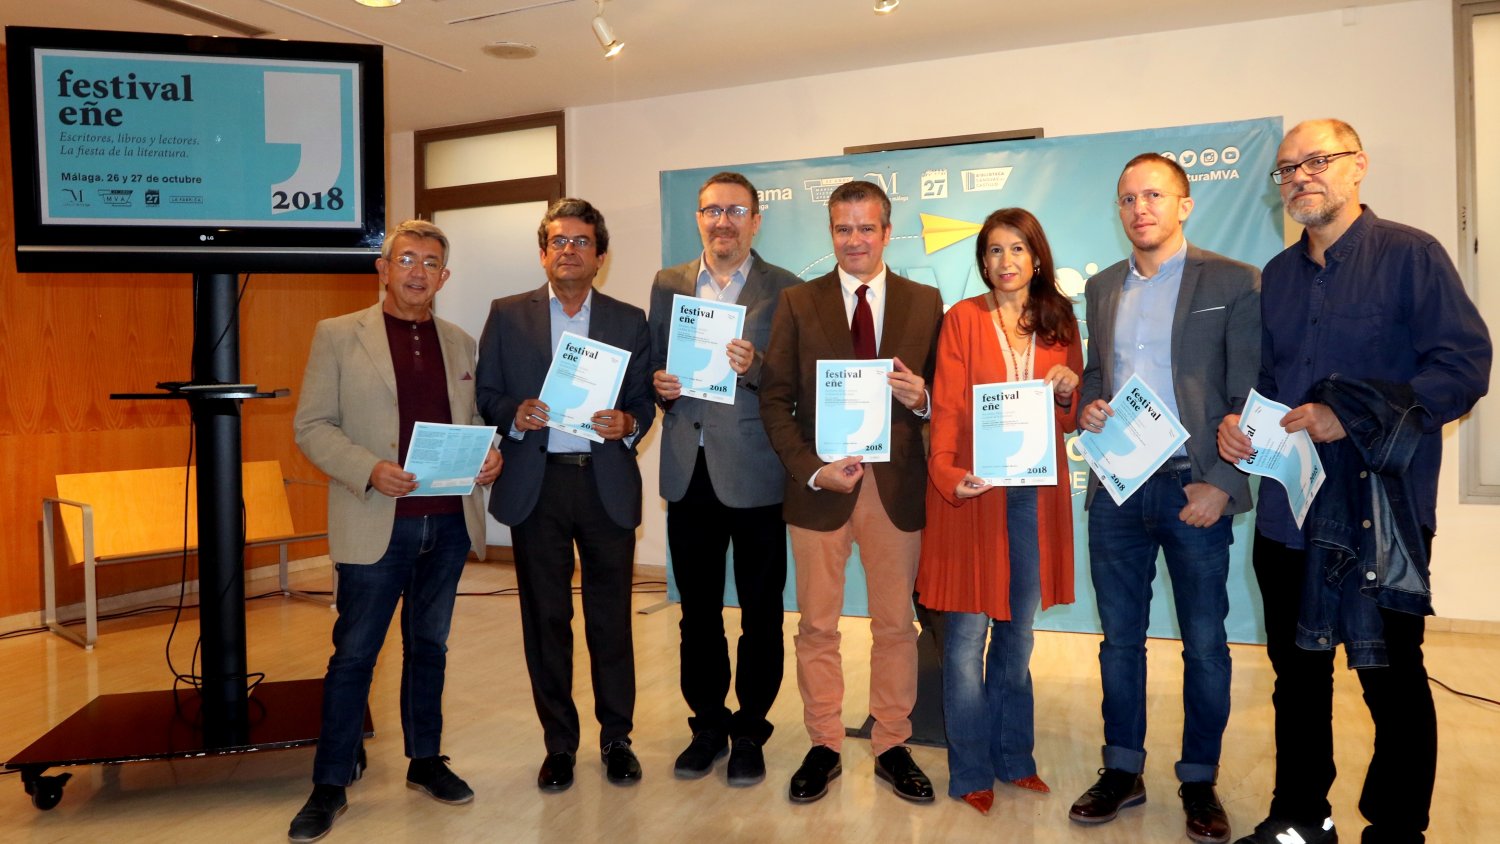 El festival literario Eñe llega a Málaga con dos intensas jornadas culturales los días 26 y 27 de octubre